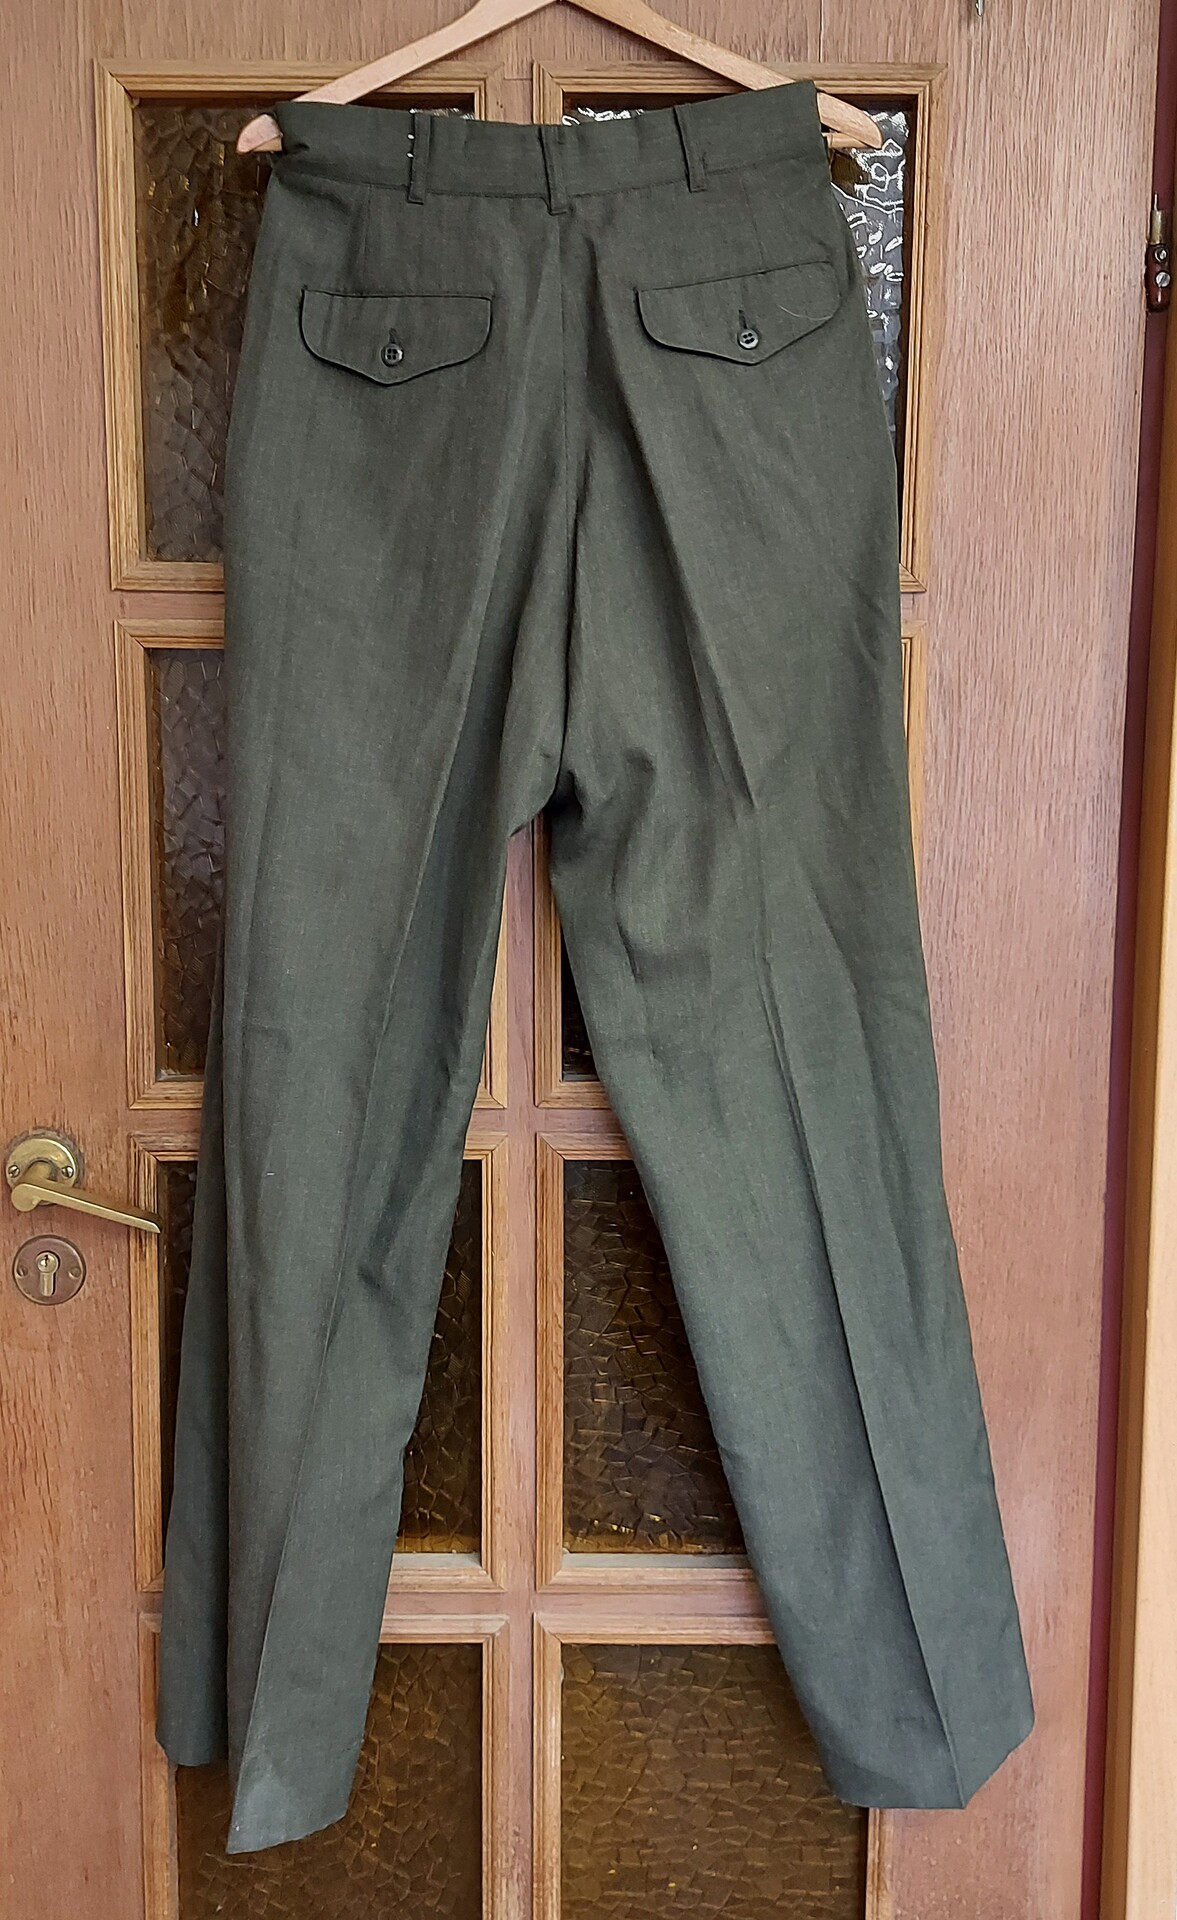 Spodnie Munduru wyjsciowego USMC - Zielone - 33R